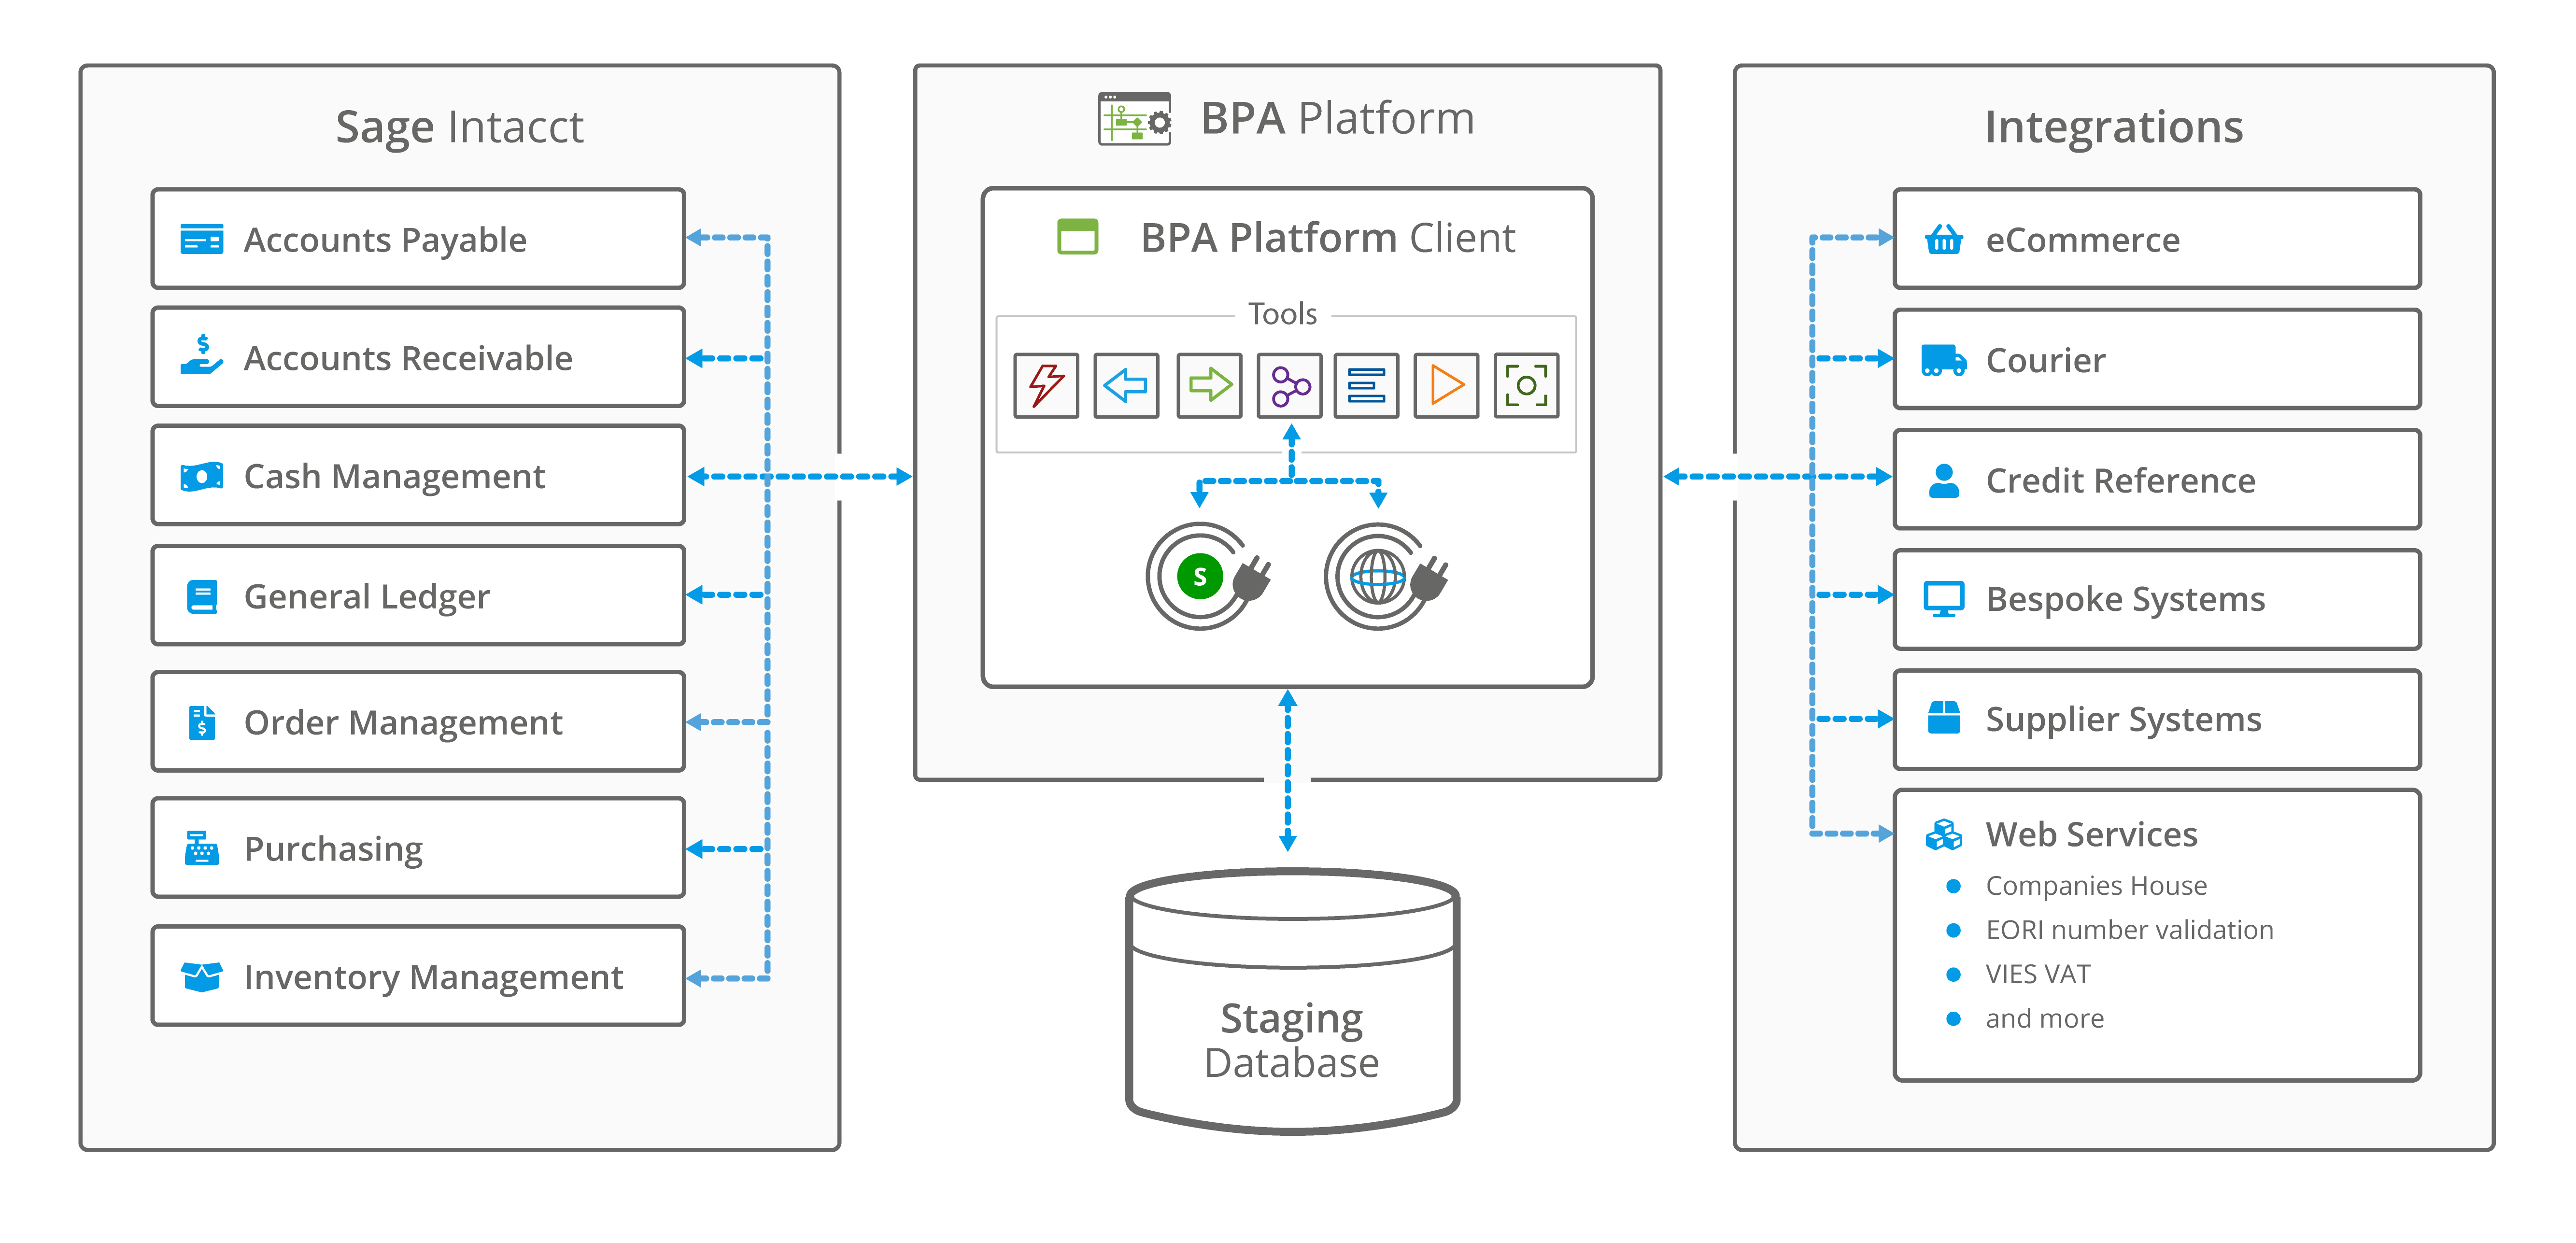 Sage Intacct Connector - Integration scenarios with BPA Platform